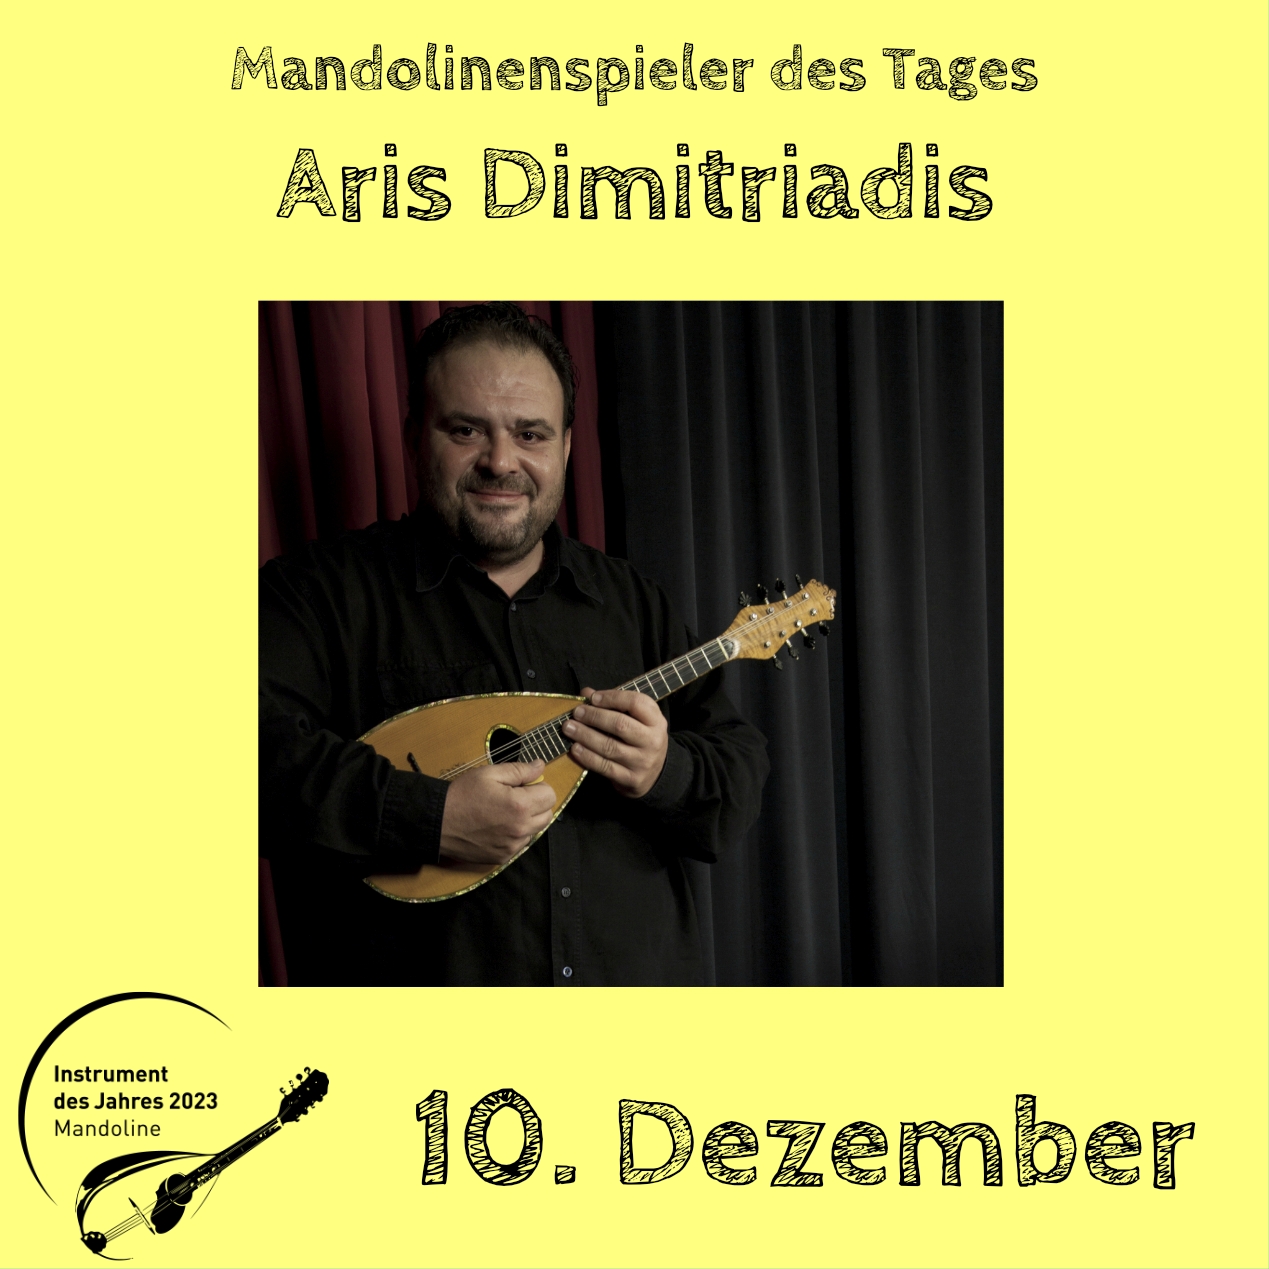 10. Dezember - Aristotle Dimitriadis Instrument des Jahres 2023 Mandolinenspieler Mandolinenspielerin des Tages